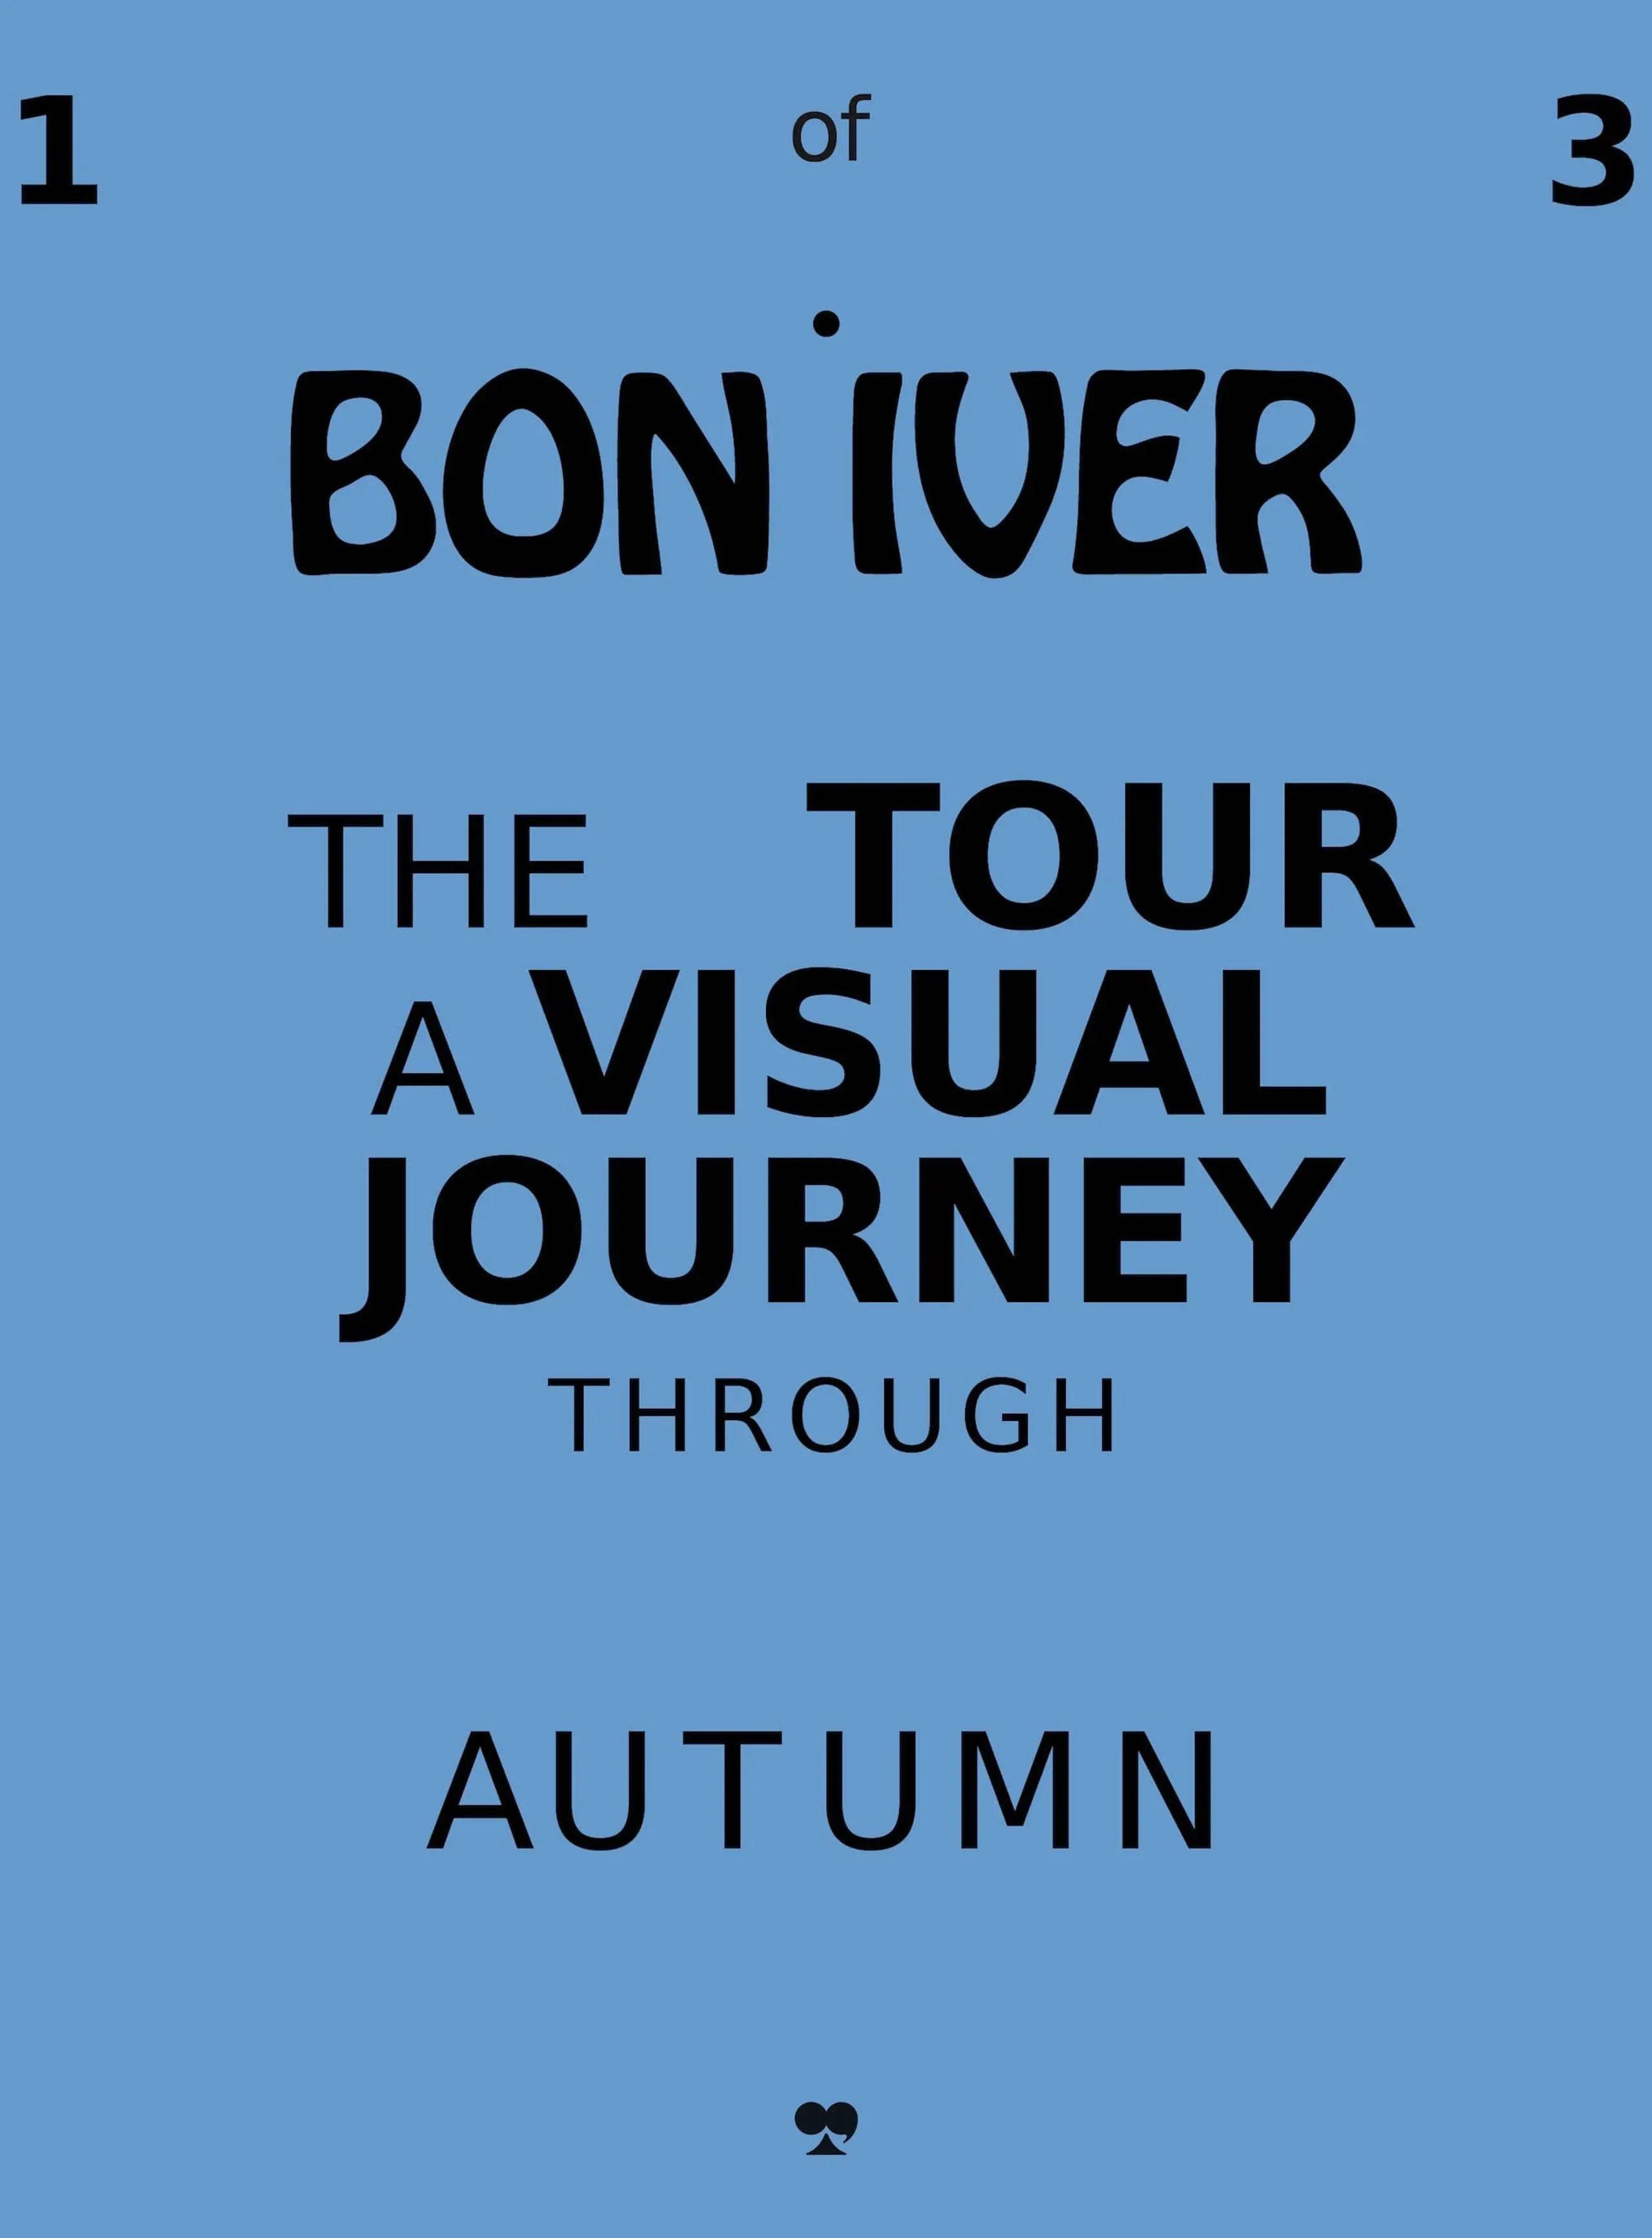 Bon Iver: Autumn